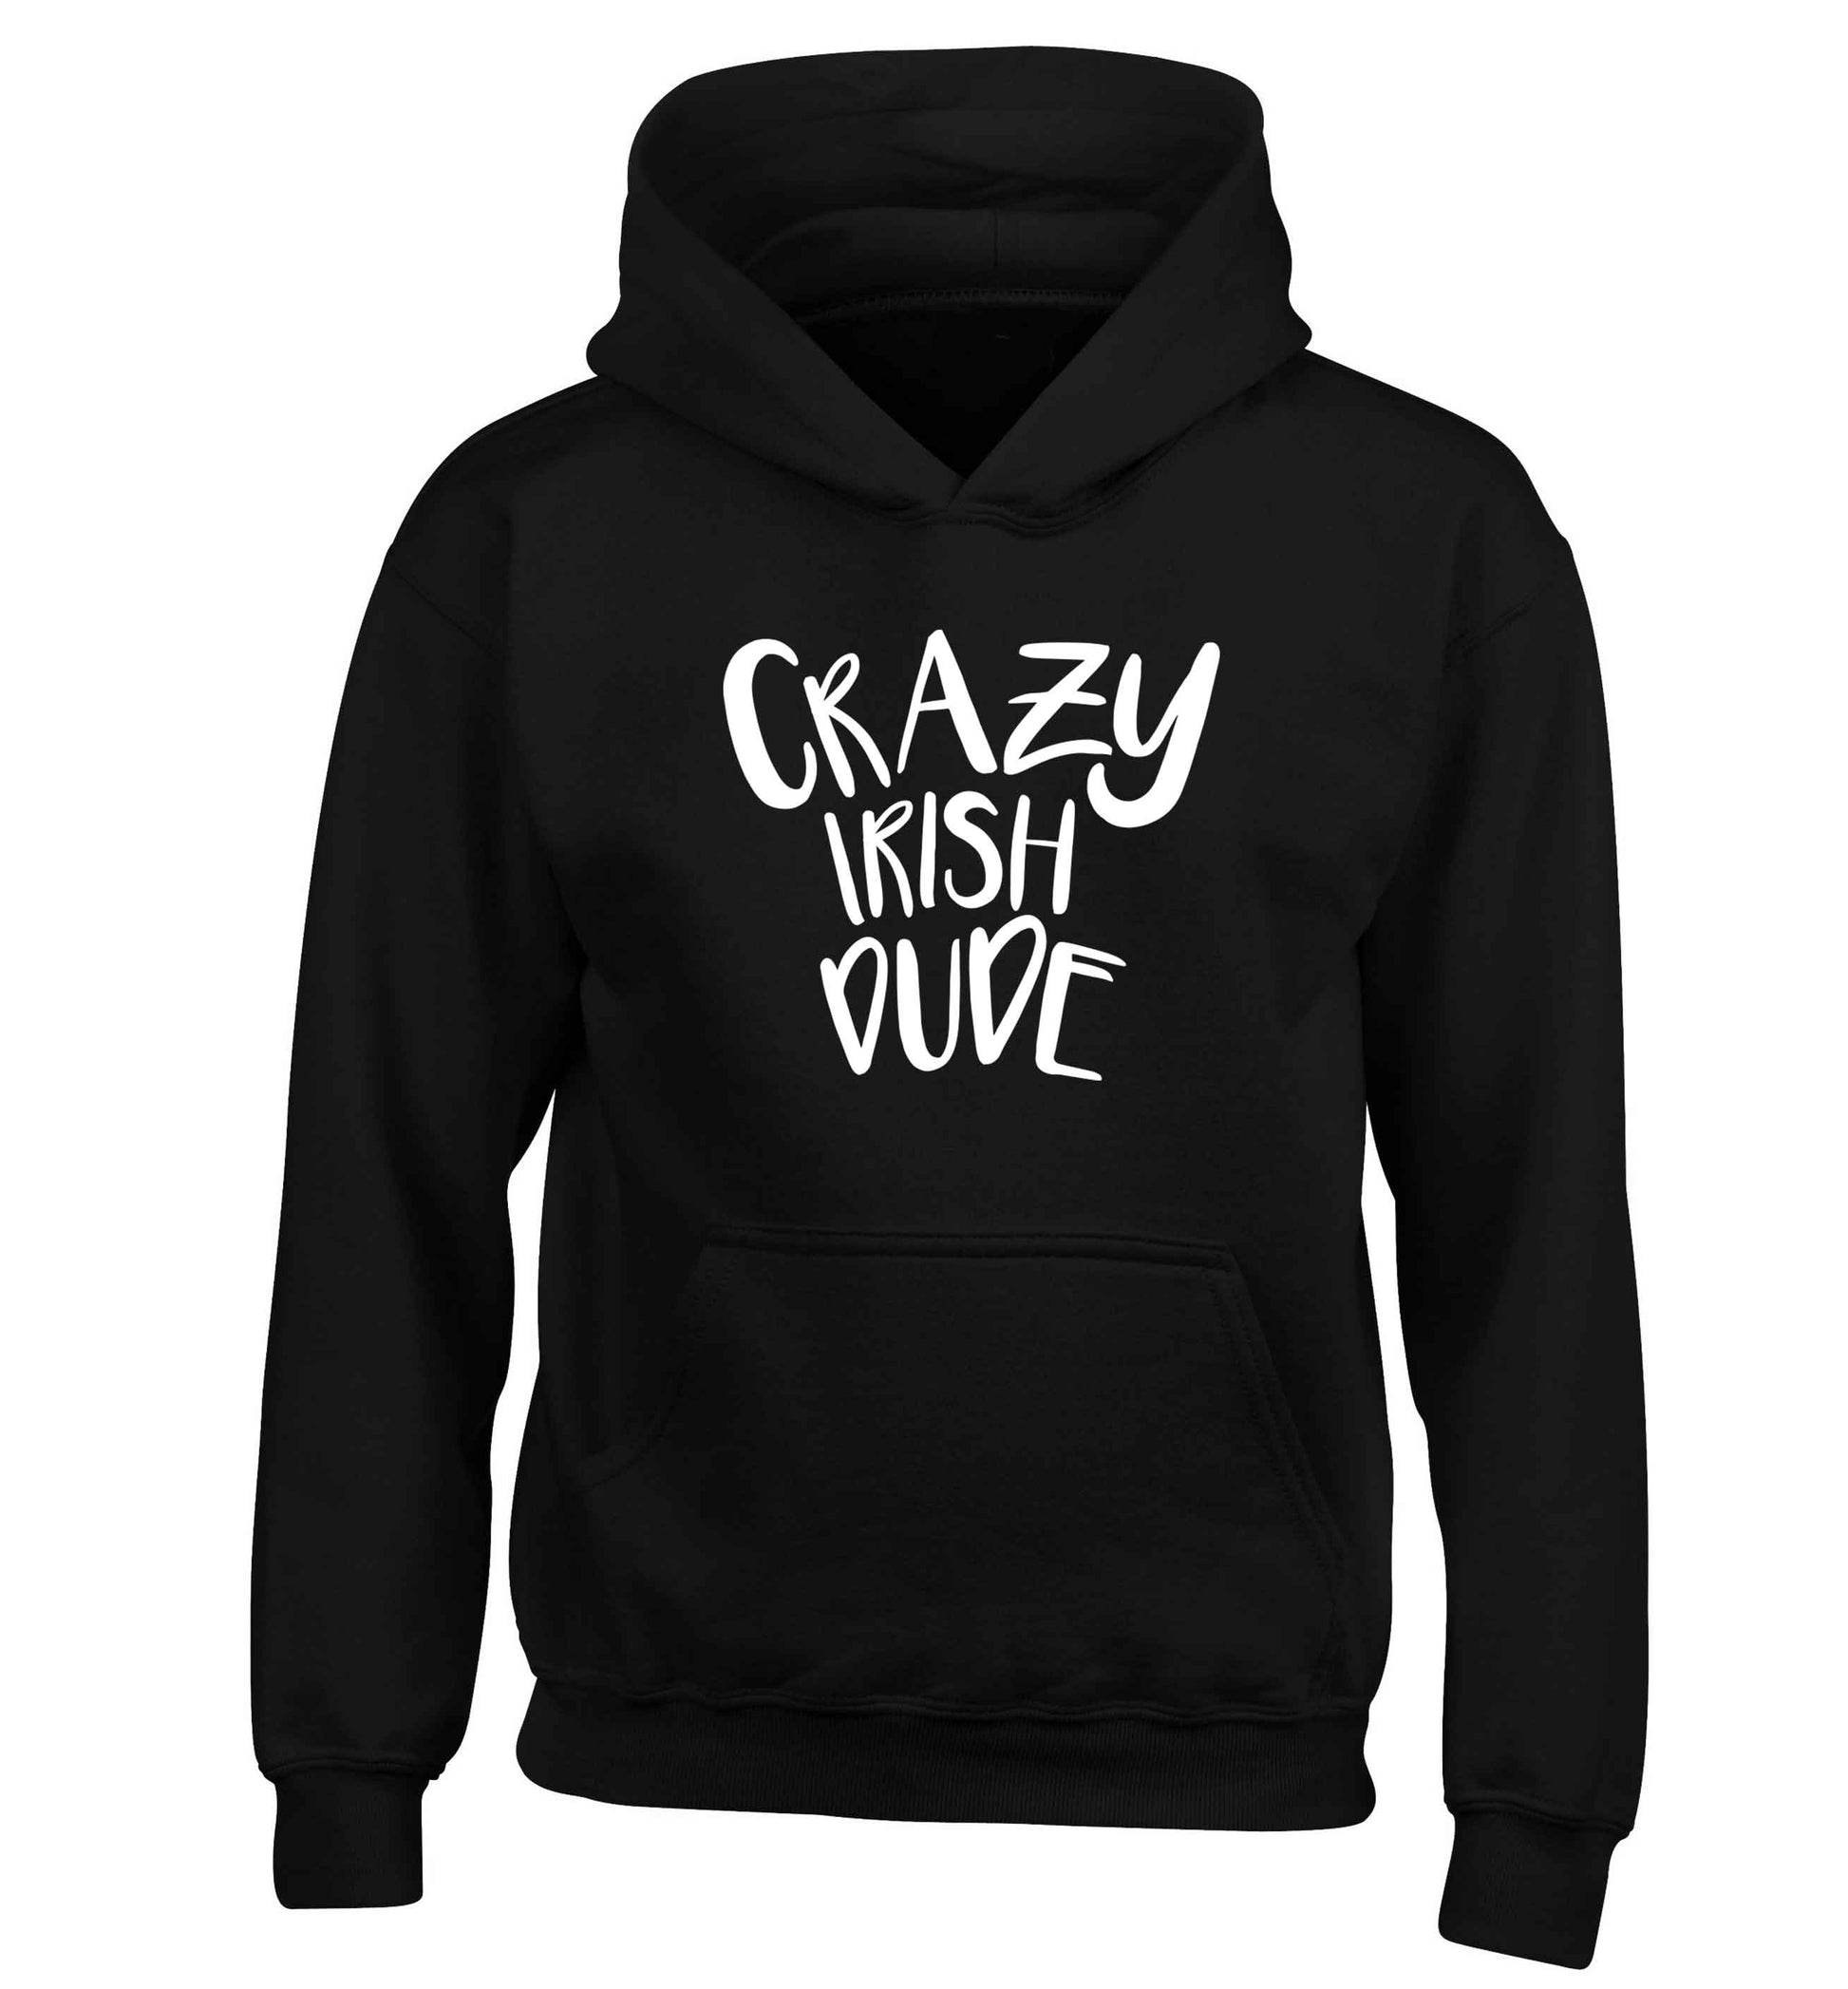 Crazy Irish dude children's black hoodie 12-13 Years